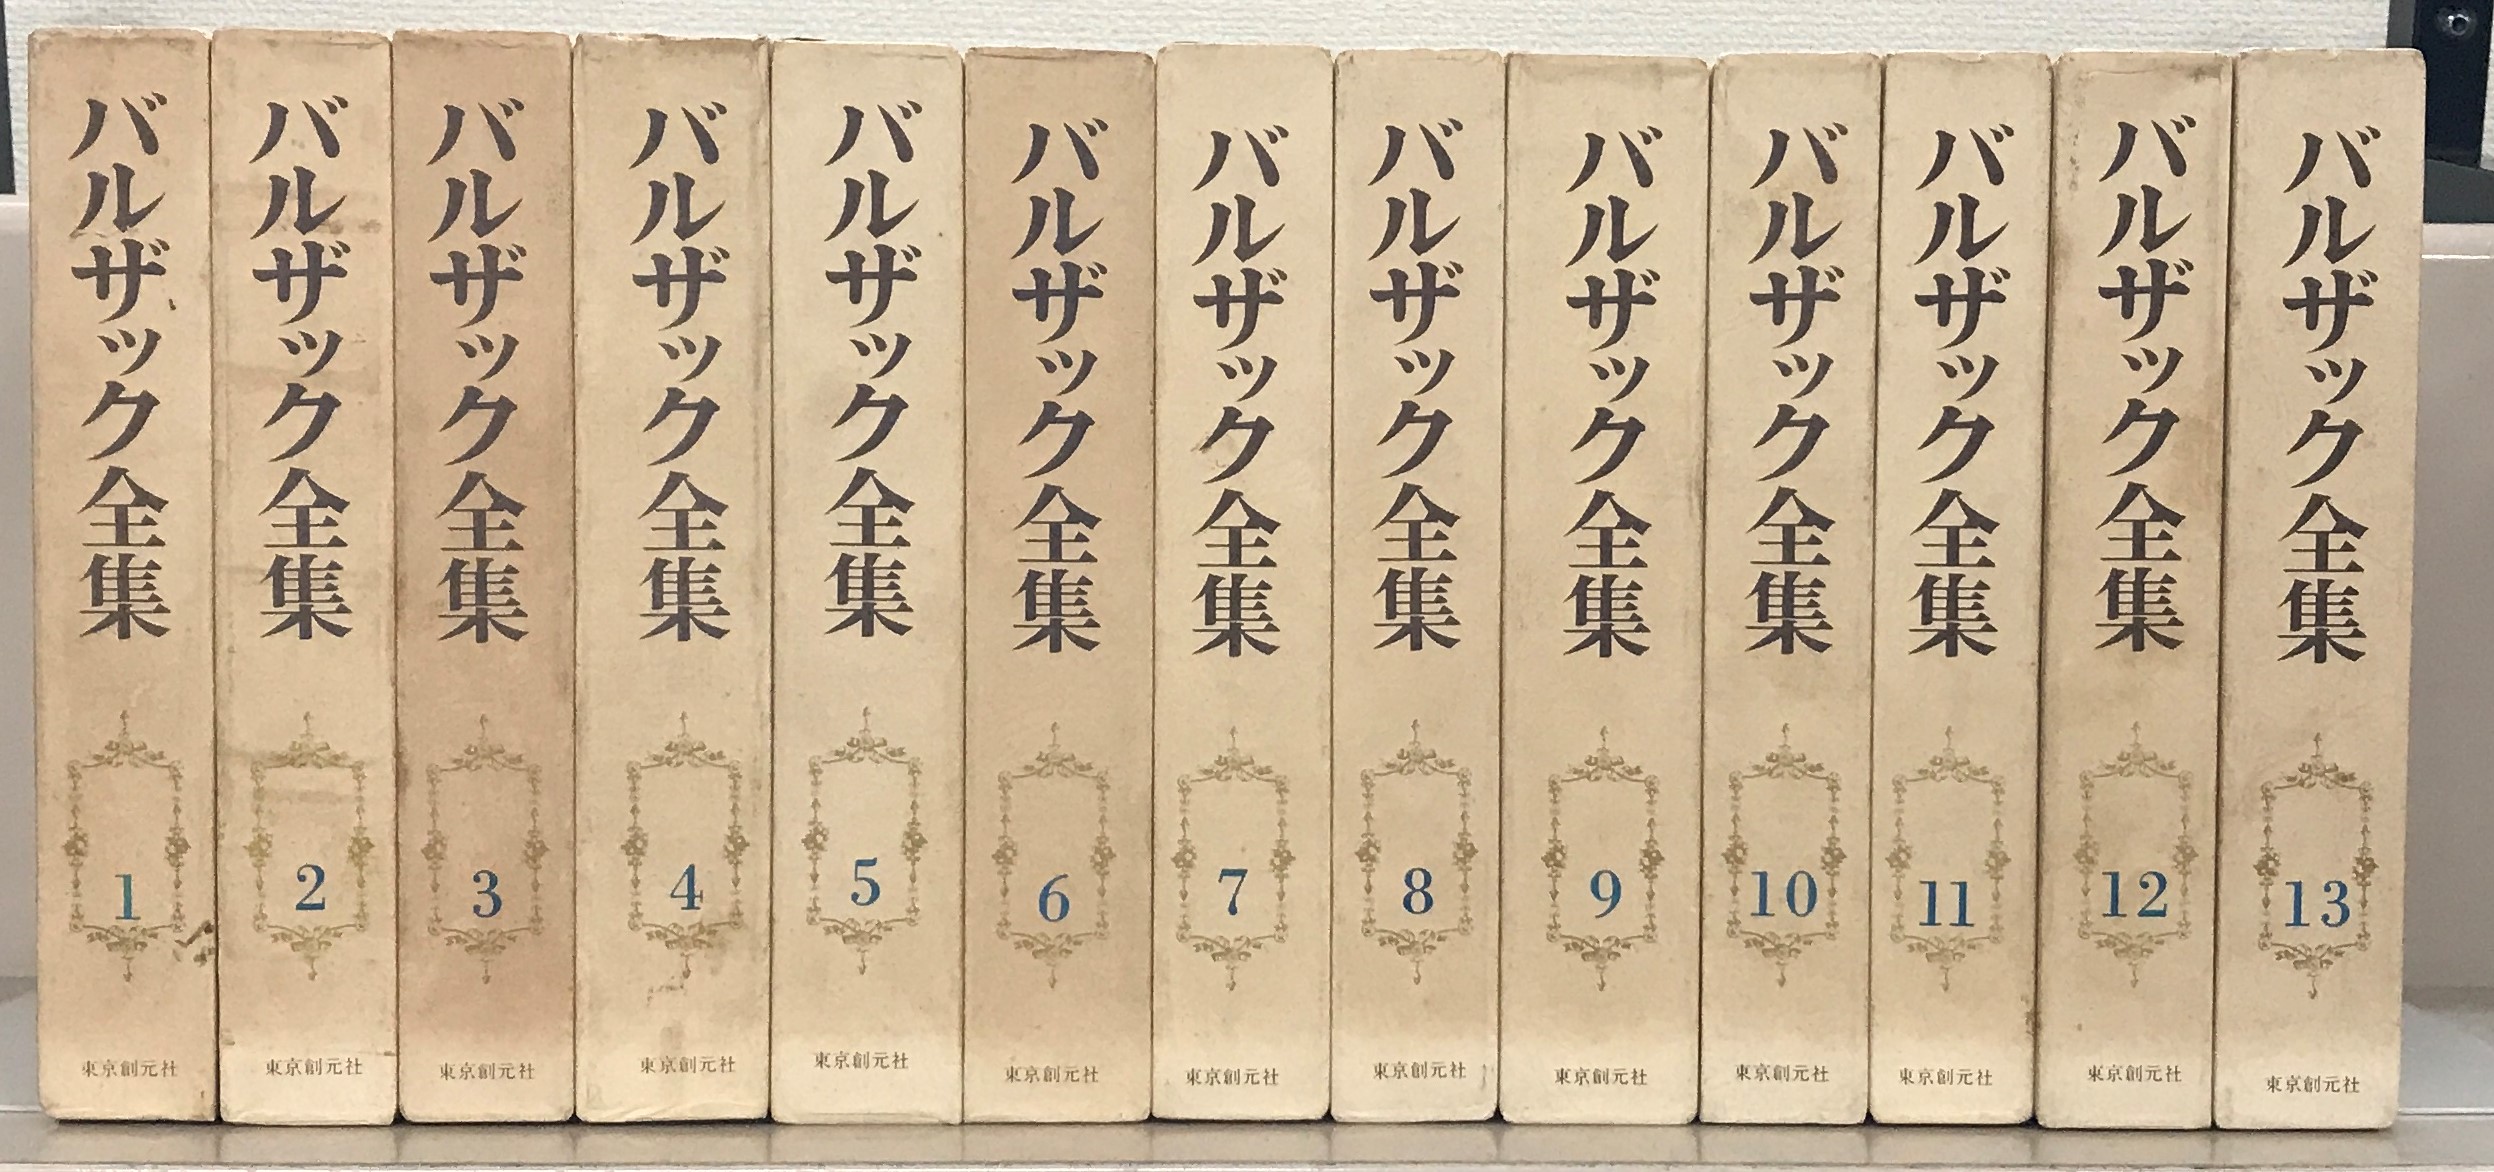 バルザック全集 全26巻セット まとめて 東京創元社 美本多数 - 文学、小説